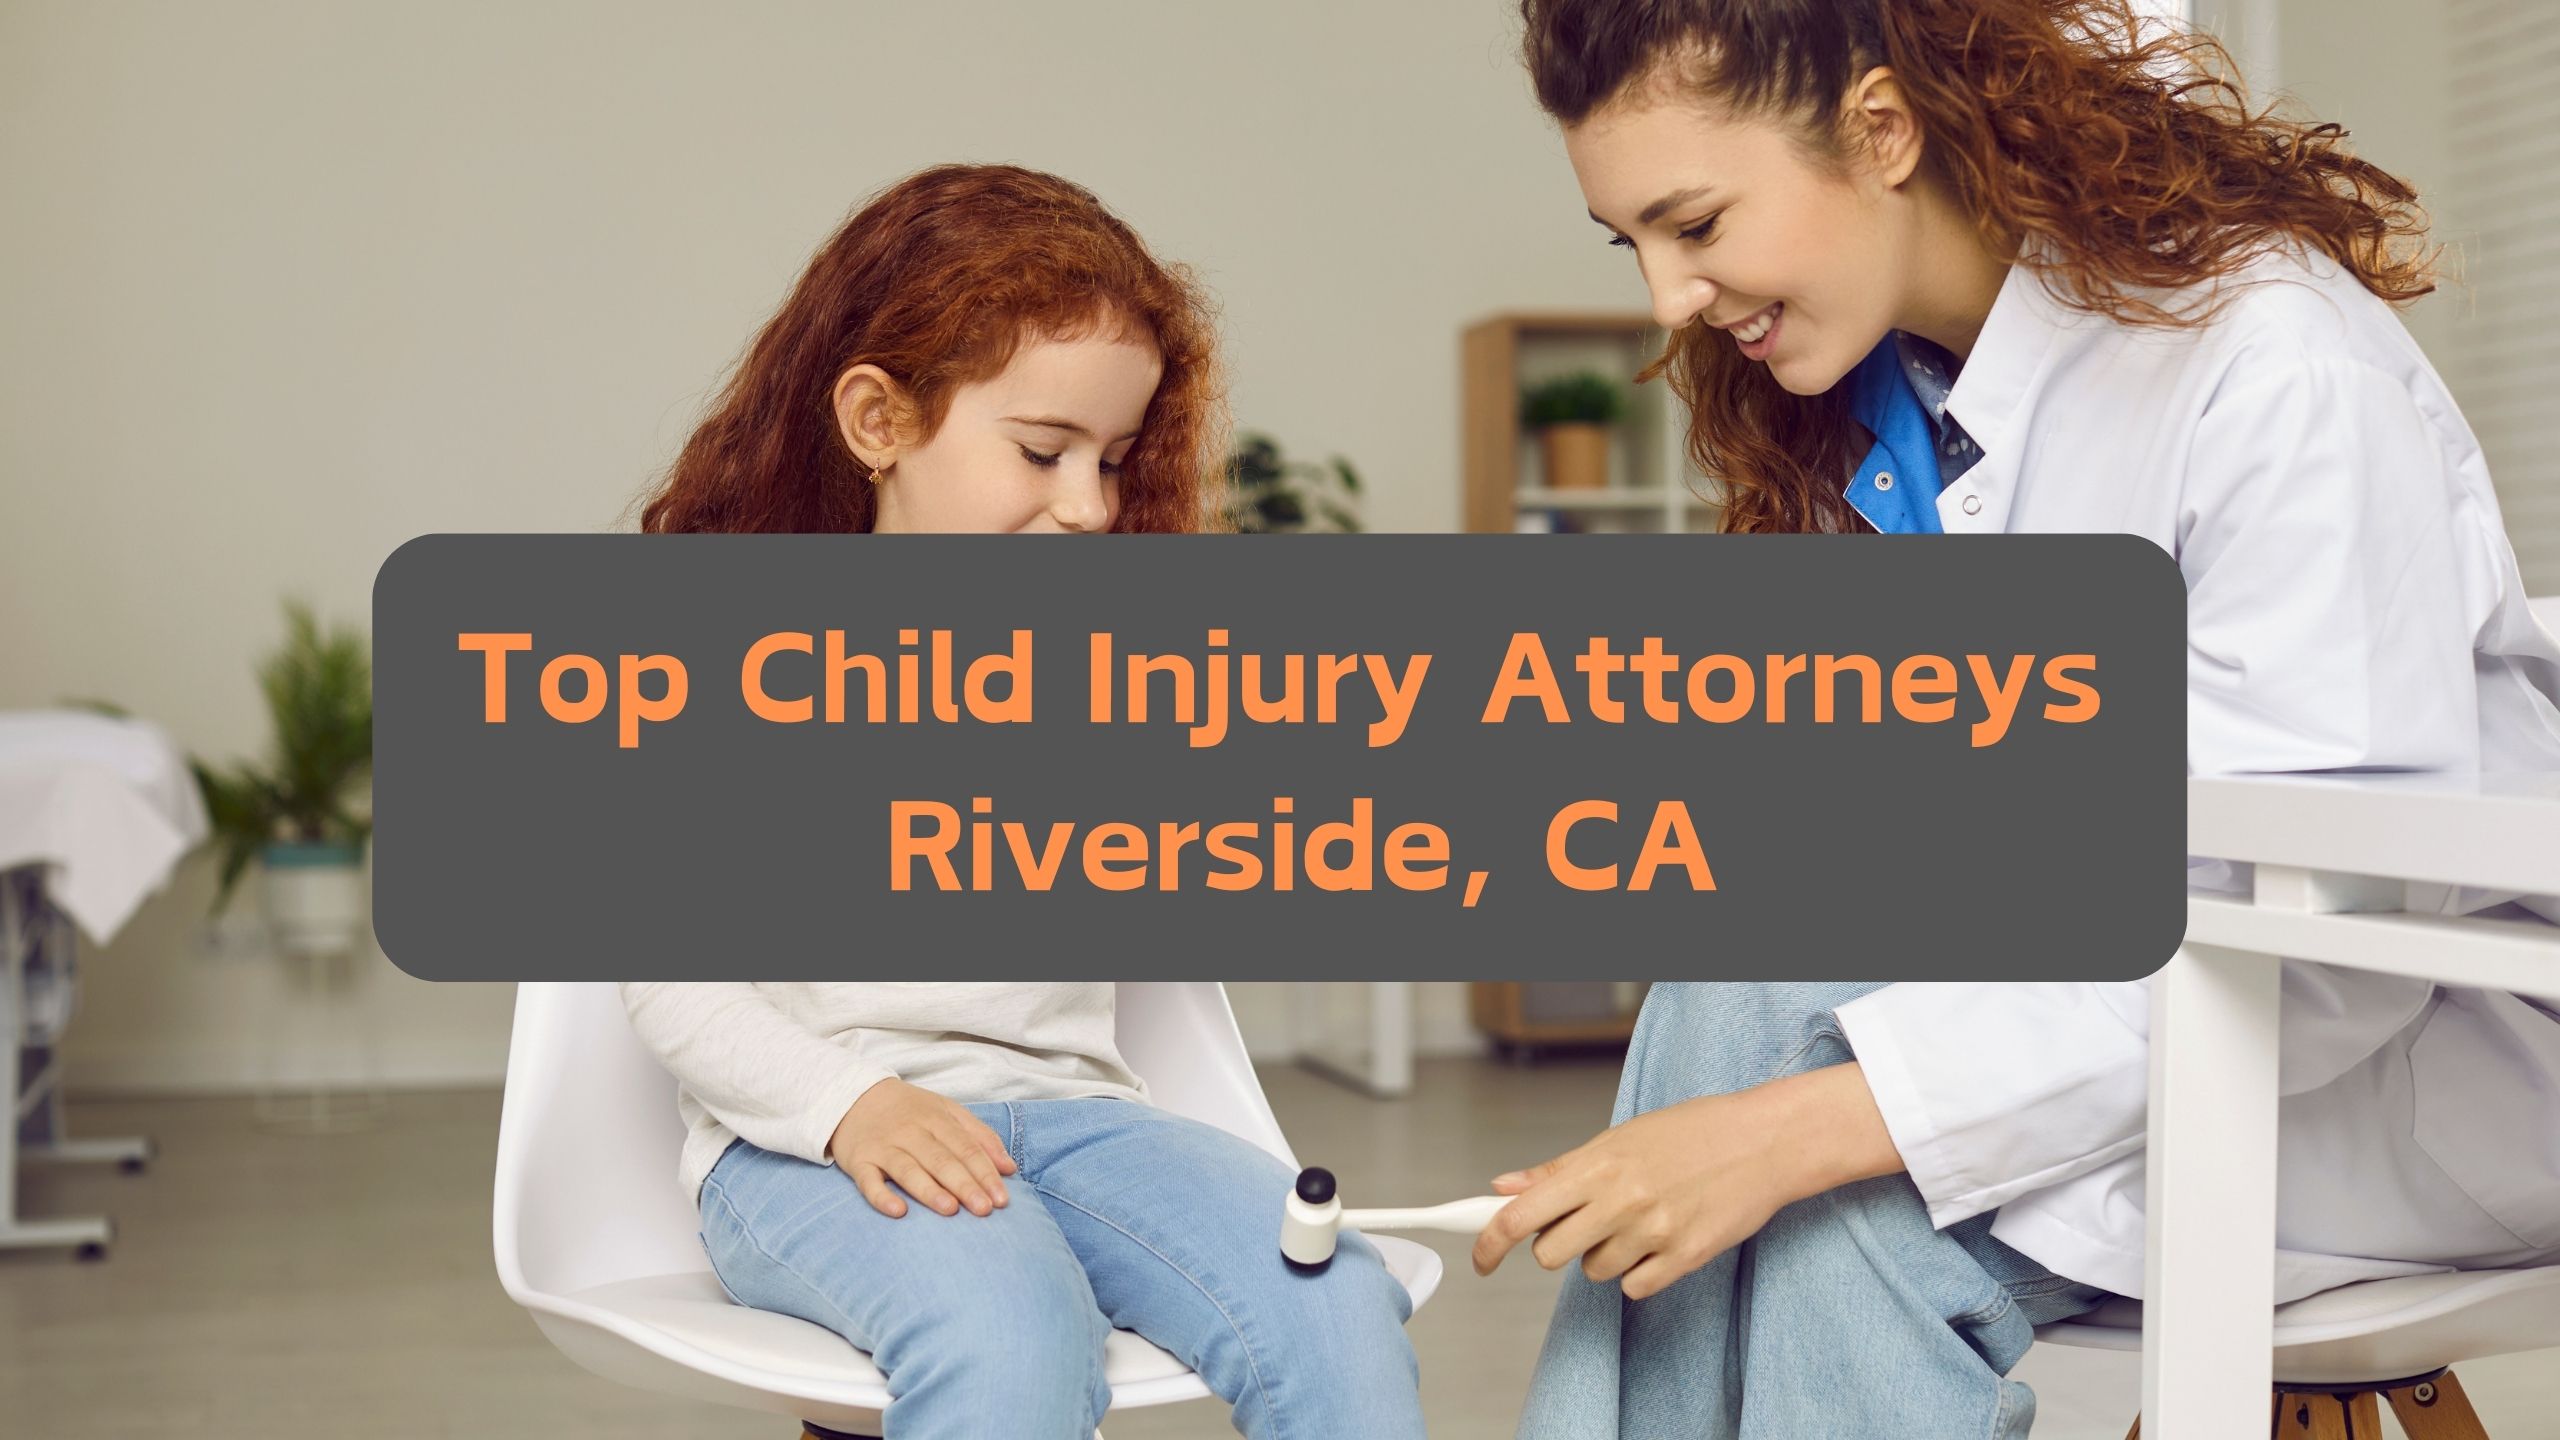 Top Child Injury Attorneys Riverside